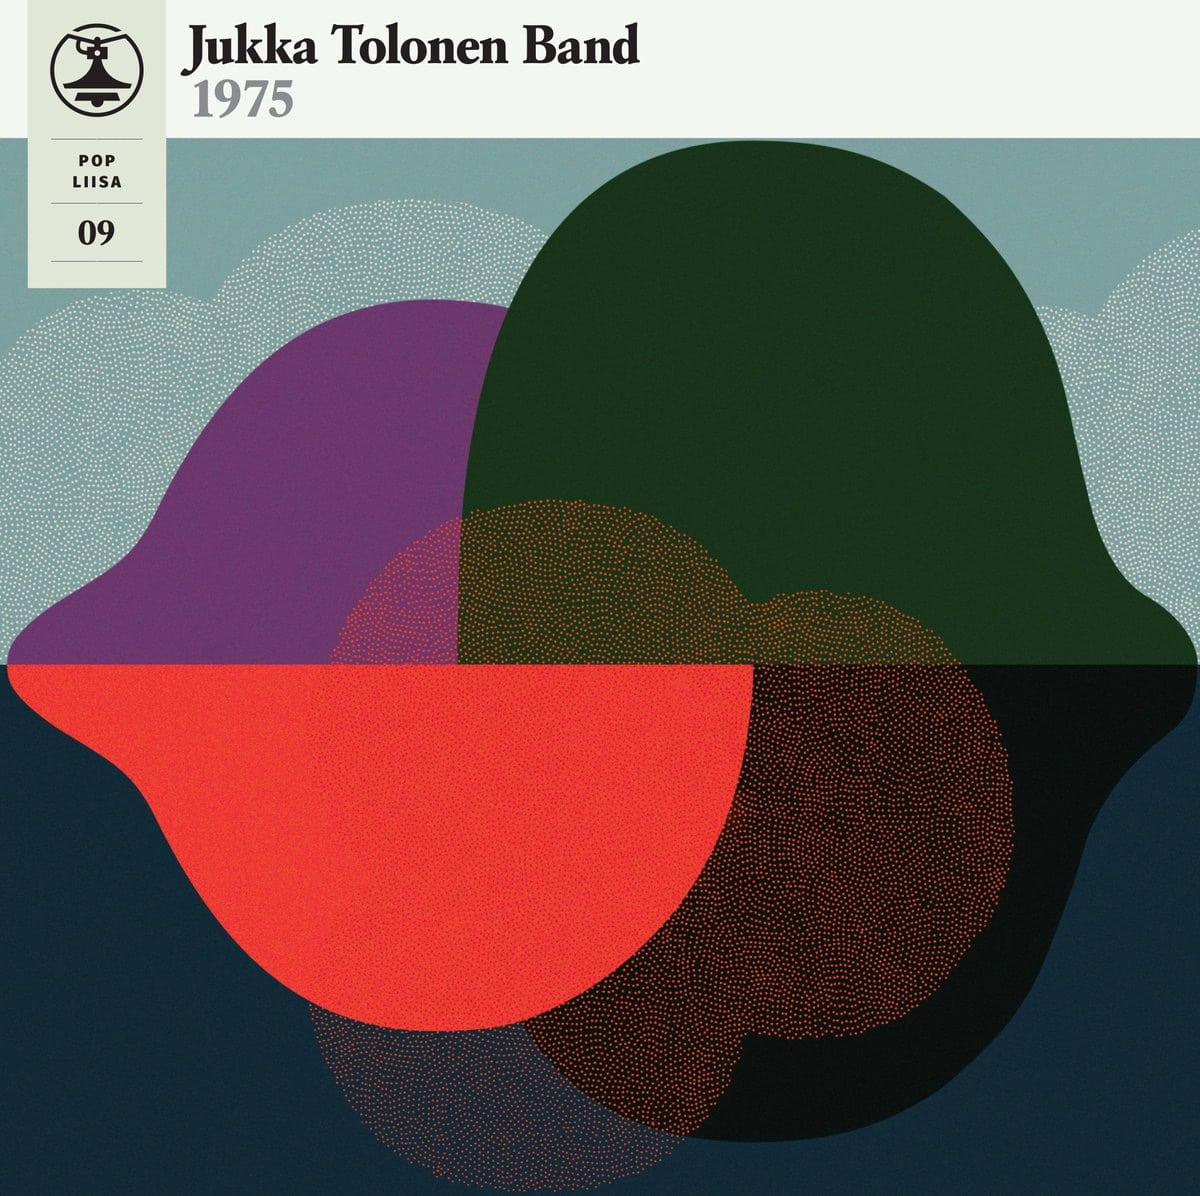 Jukka Tolonen Band - Pop Liisa 09 - SRE013 - SVART RECORDS